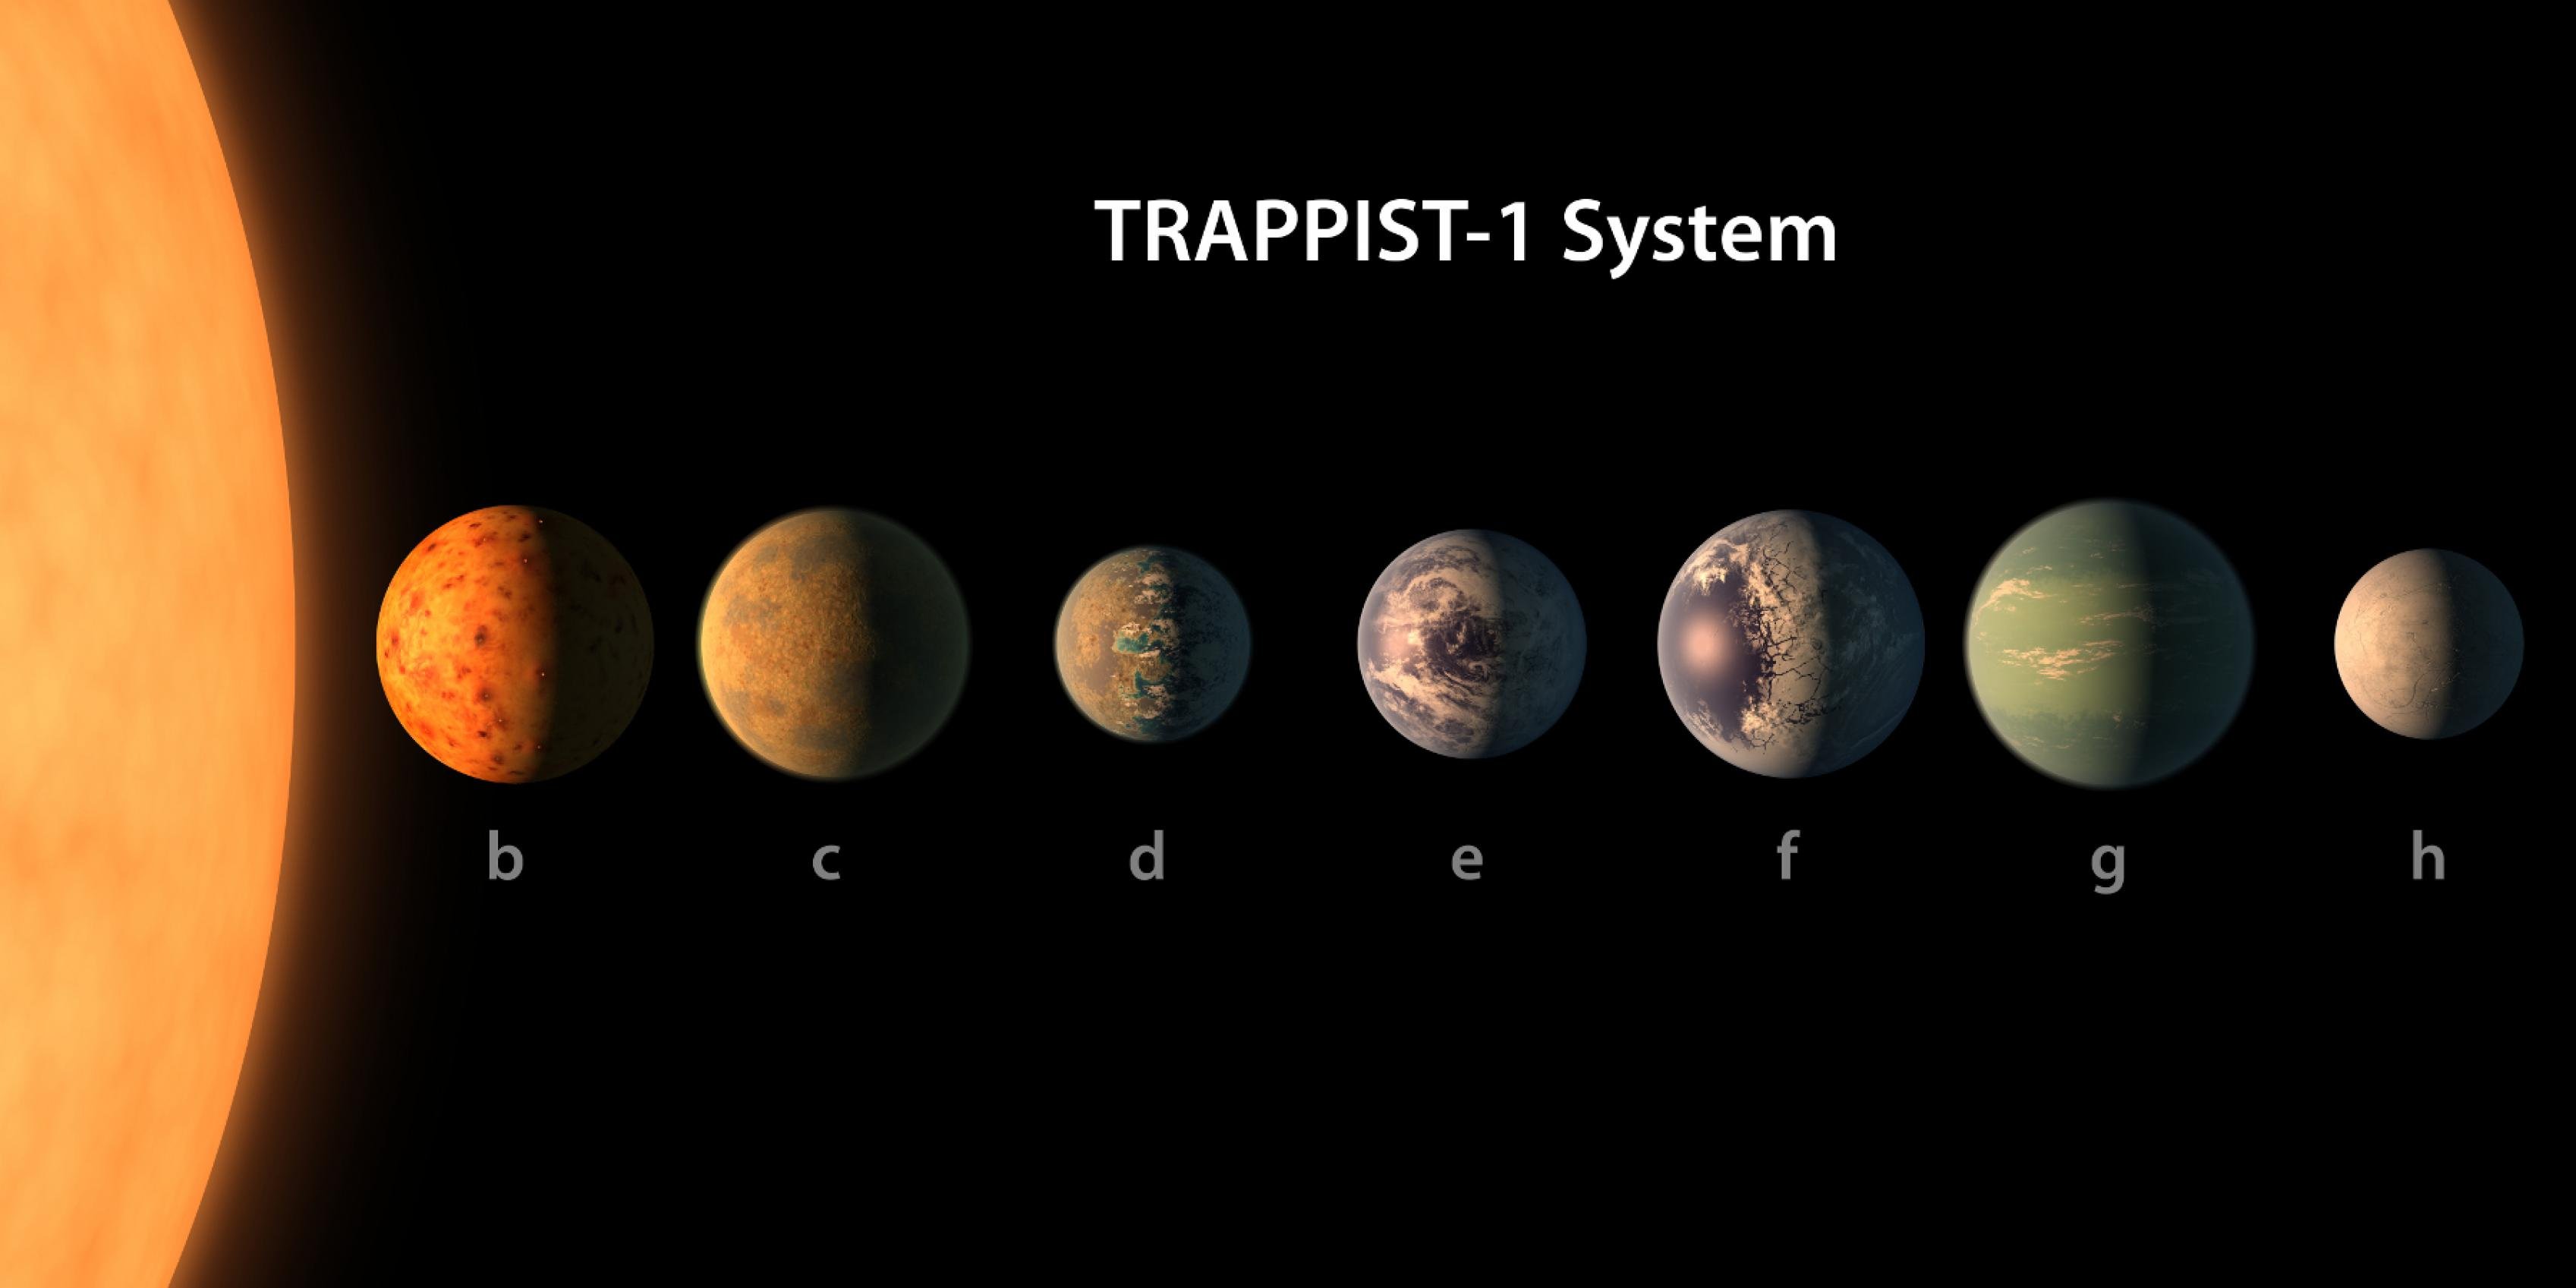 Grafik des kleinen Trappist-1-Sterns und der sieben ungefähr erdgroßen Planeten, die mit blauen oder grünen Atmosphären, Ozeanen, Gletschern und Kontinenten auch optisch der Erde zuähneln scheiden. Es bleibt aber eine künstlerische Darstellung der NASA.